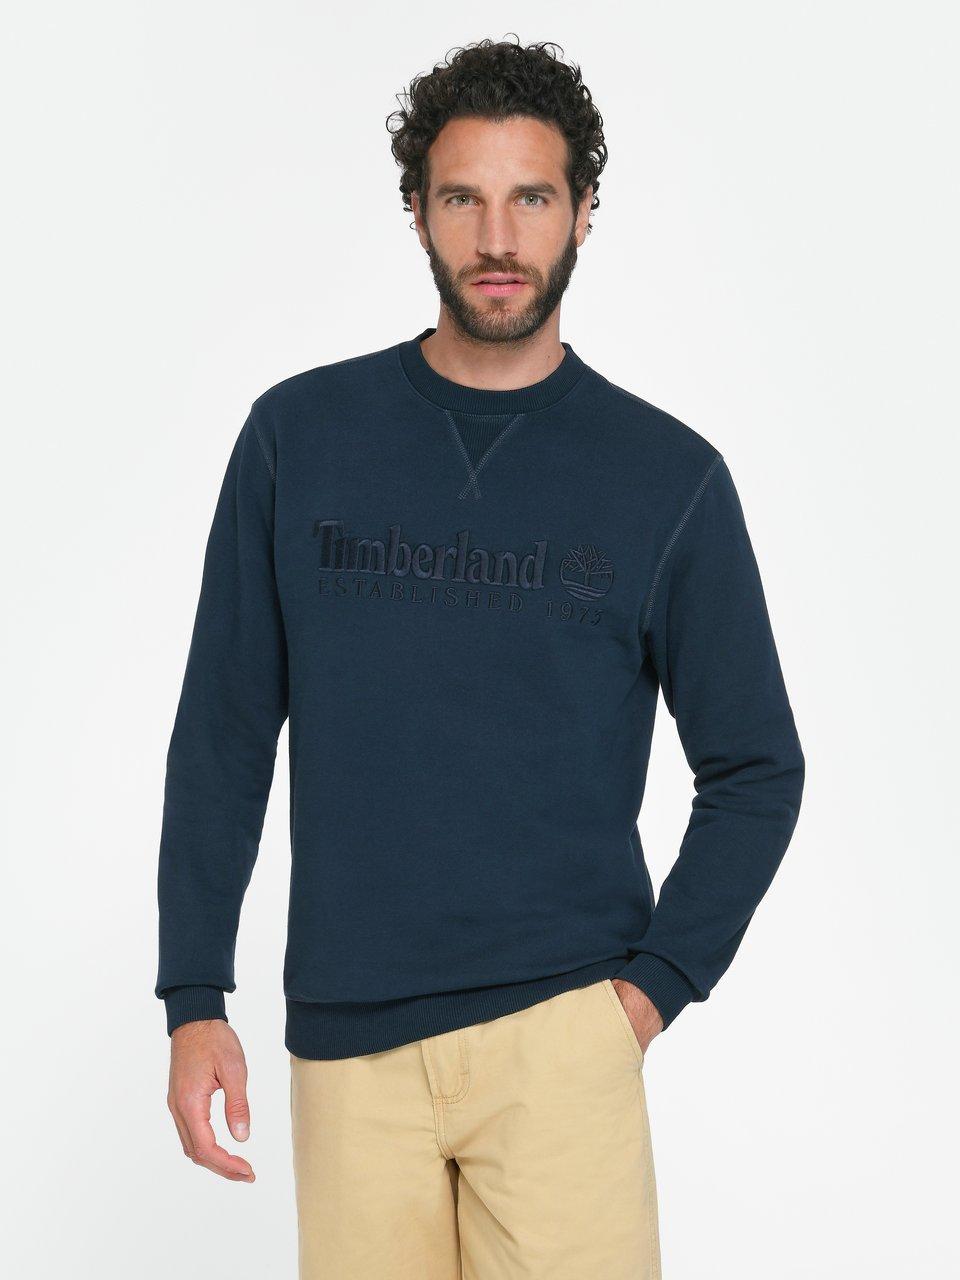 Timberland - Le sweat-shirt